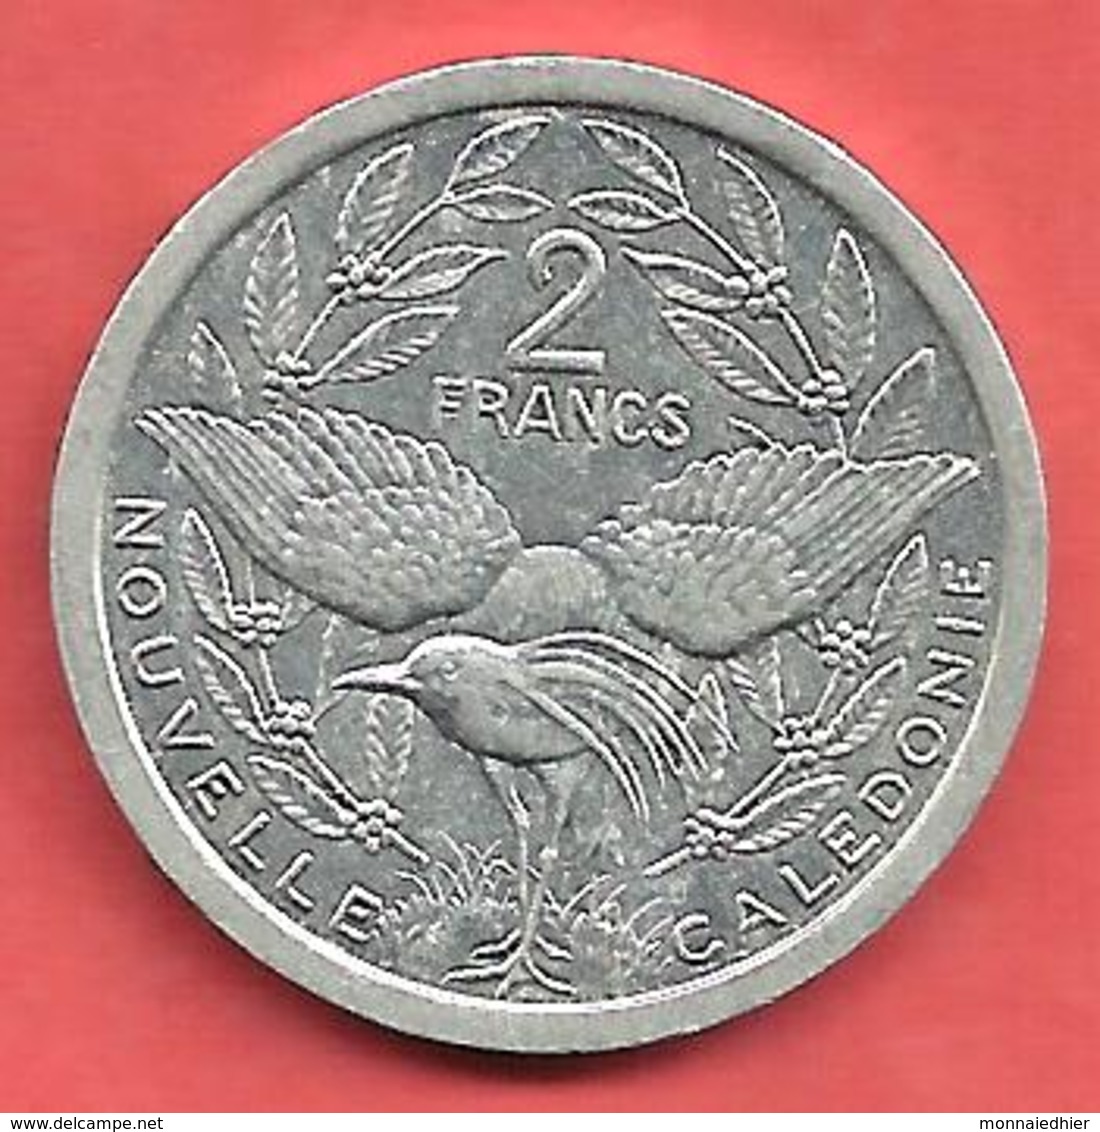 2 Francs , NOUVELLE CALEDONIE , Aluminium , 1991 , N° KM # 14 - Nouvelle-Calédonie